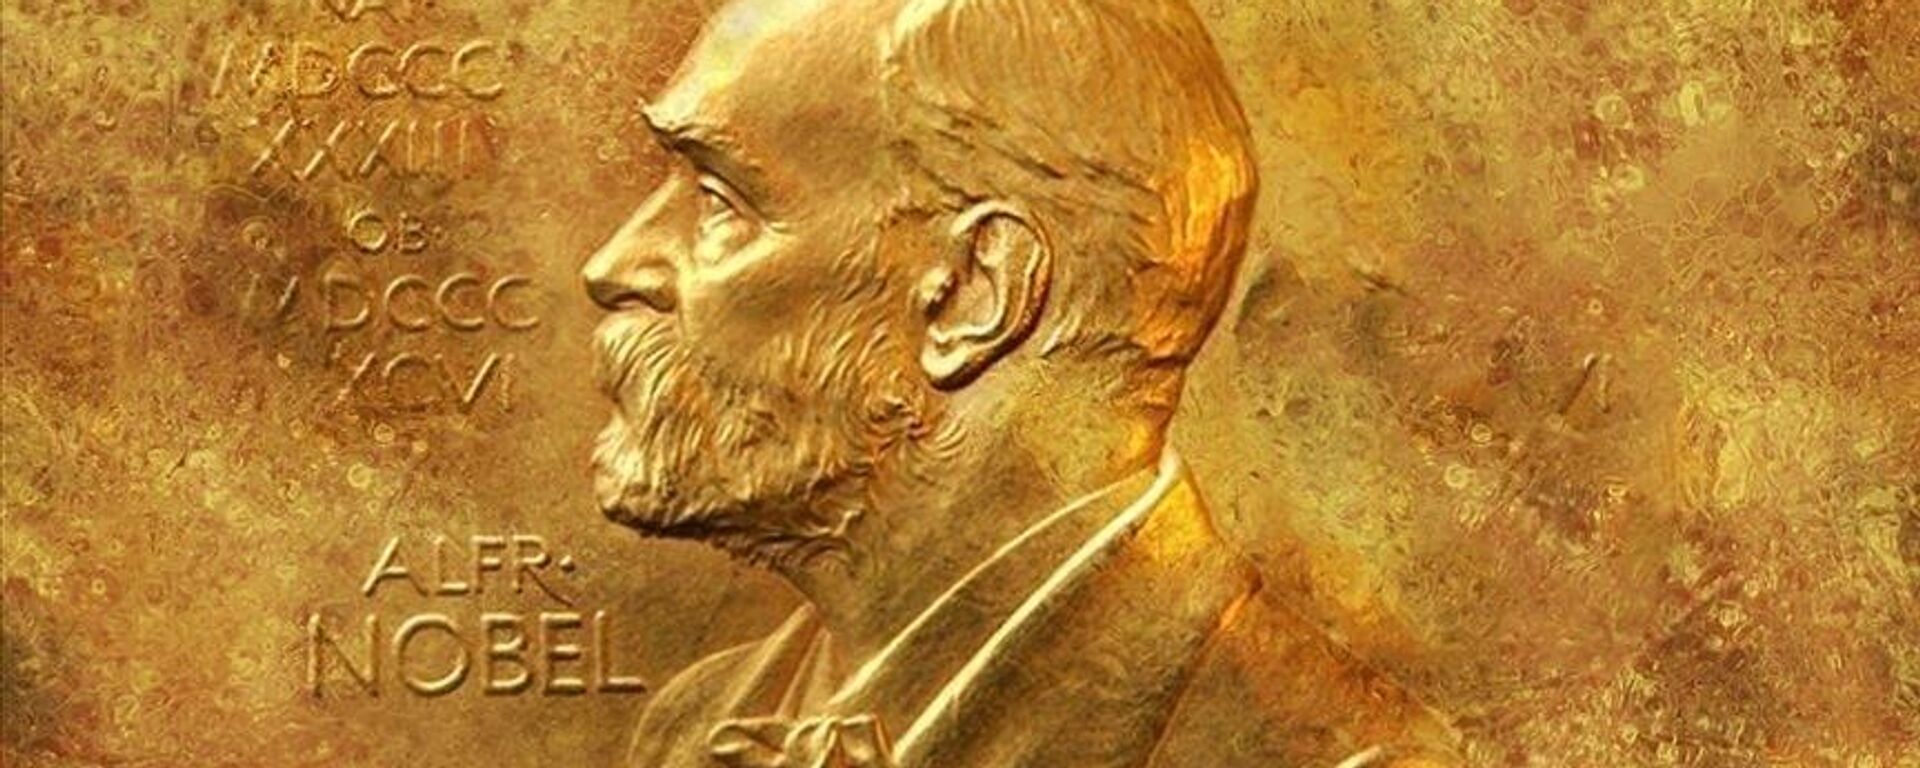  Norveç Nobel Komitesi, 2023 Nobel Barış Ödülü'ne 305 adayın gösterildiğini bildirdi. - Sputnik Türkiye, 1920, 22.02.2023